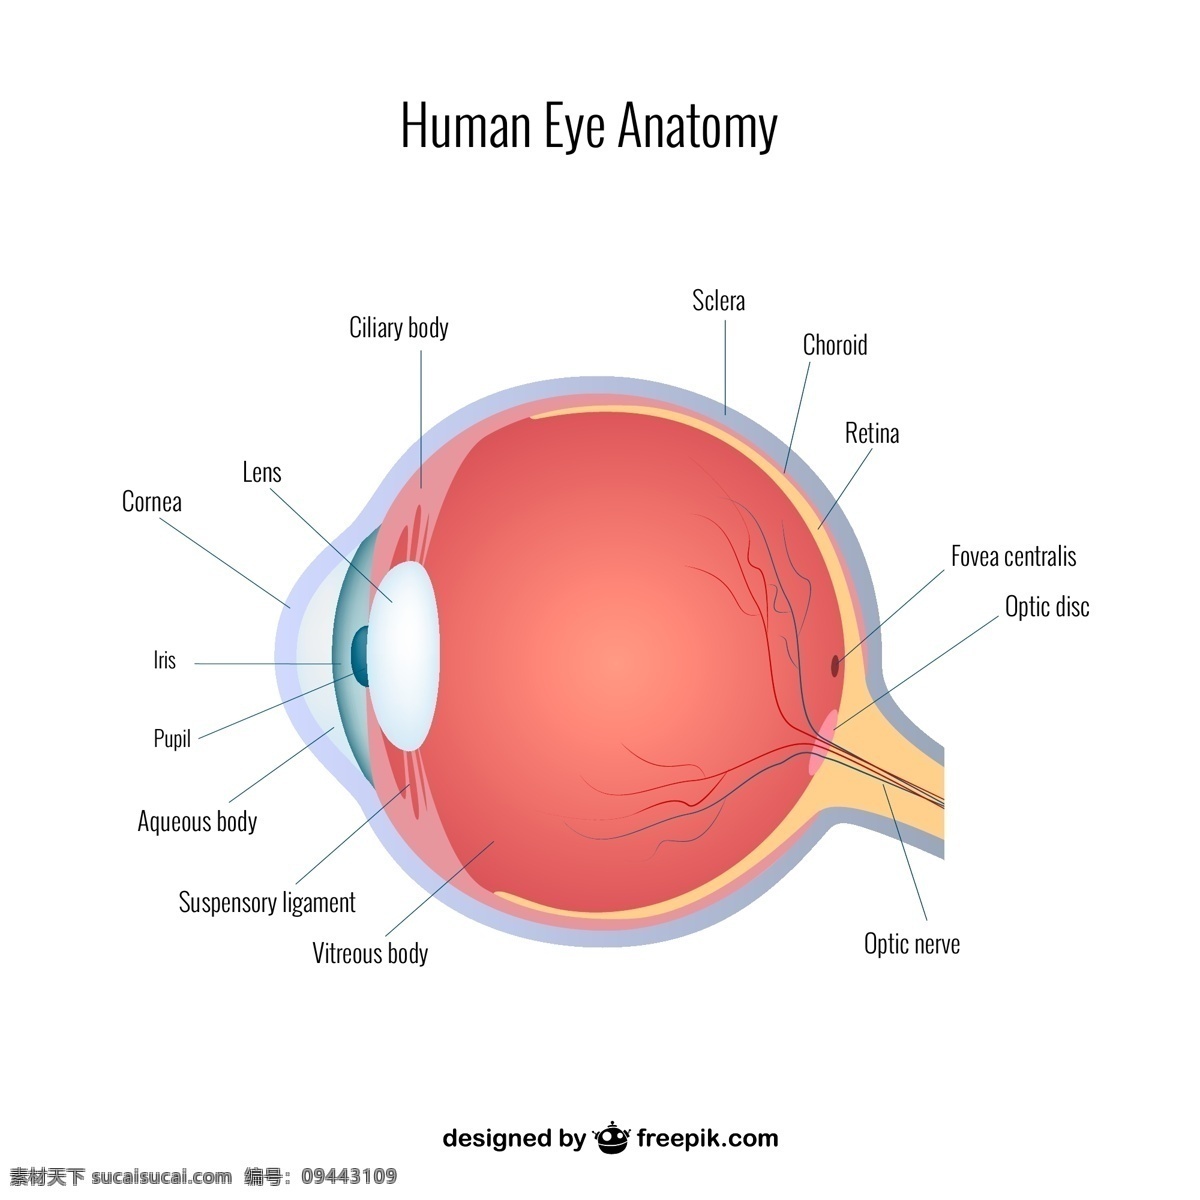 眼球断面图 眼球解剖 失量图 眼睛 眼球 医疗保健 生活百科 矢量